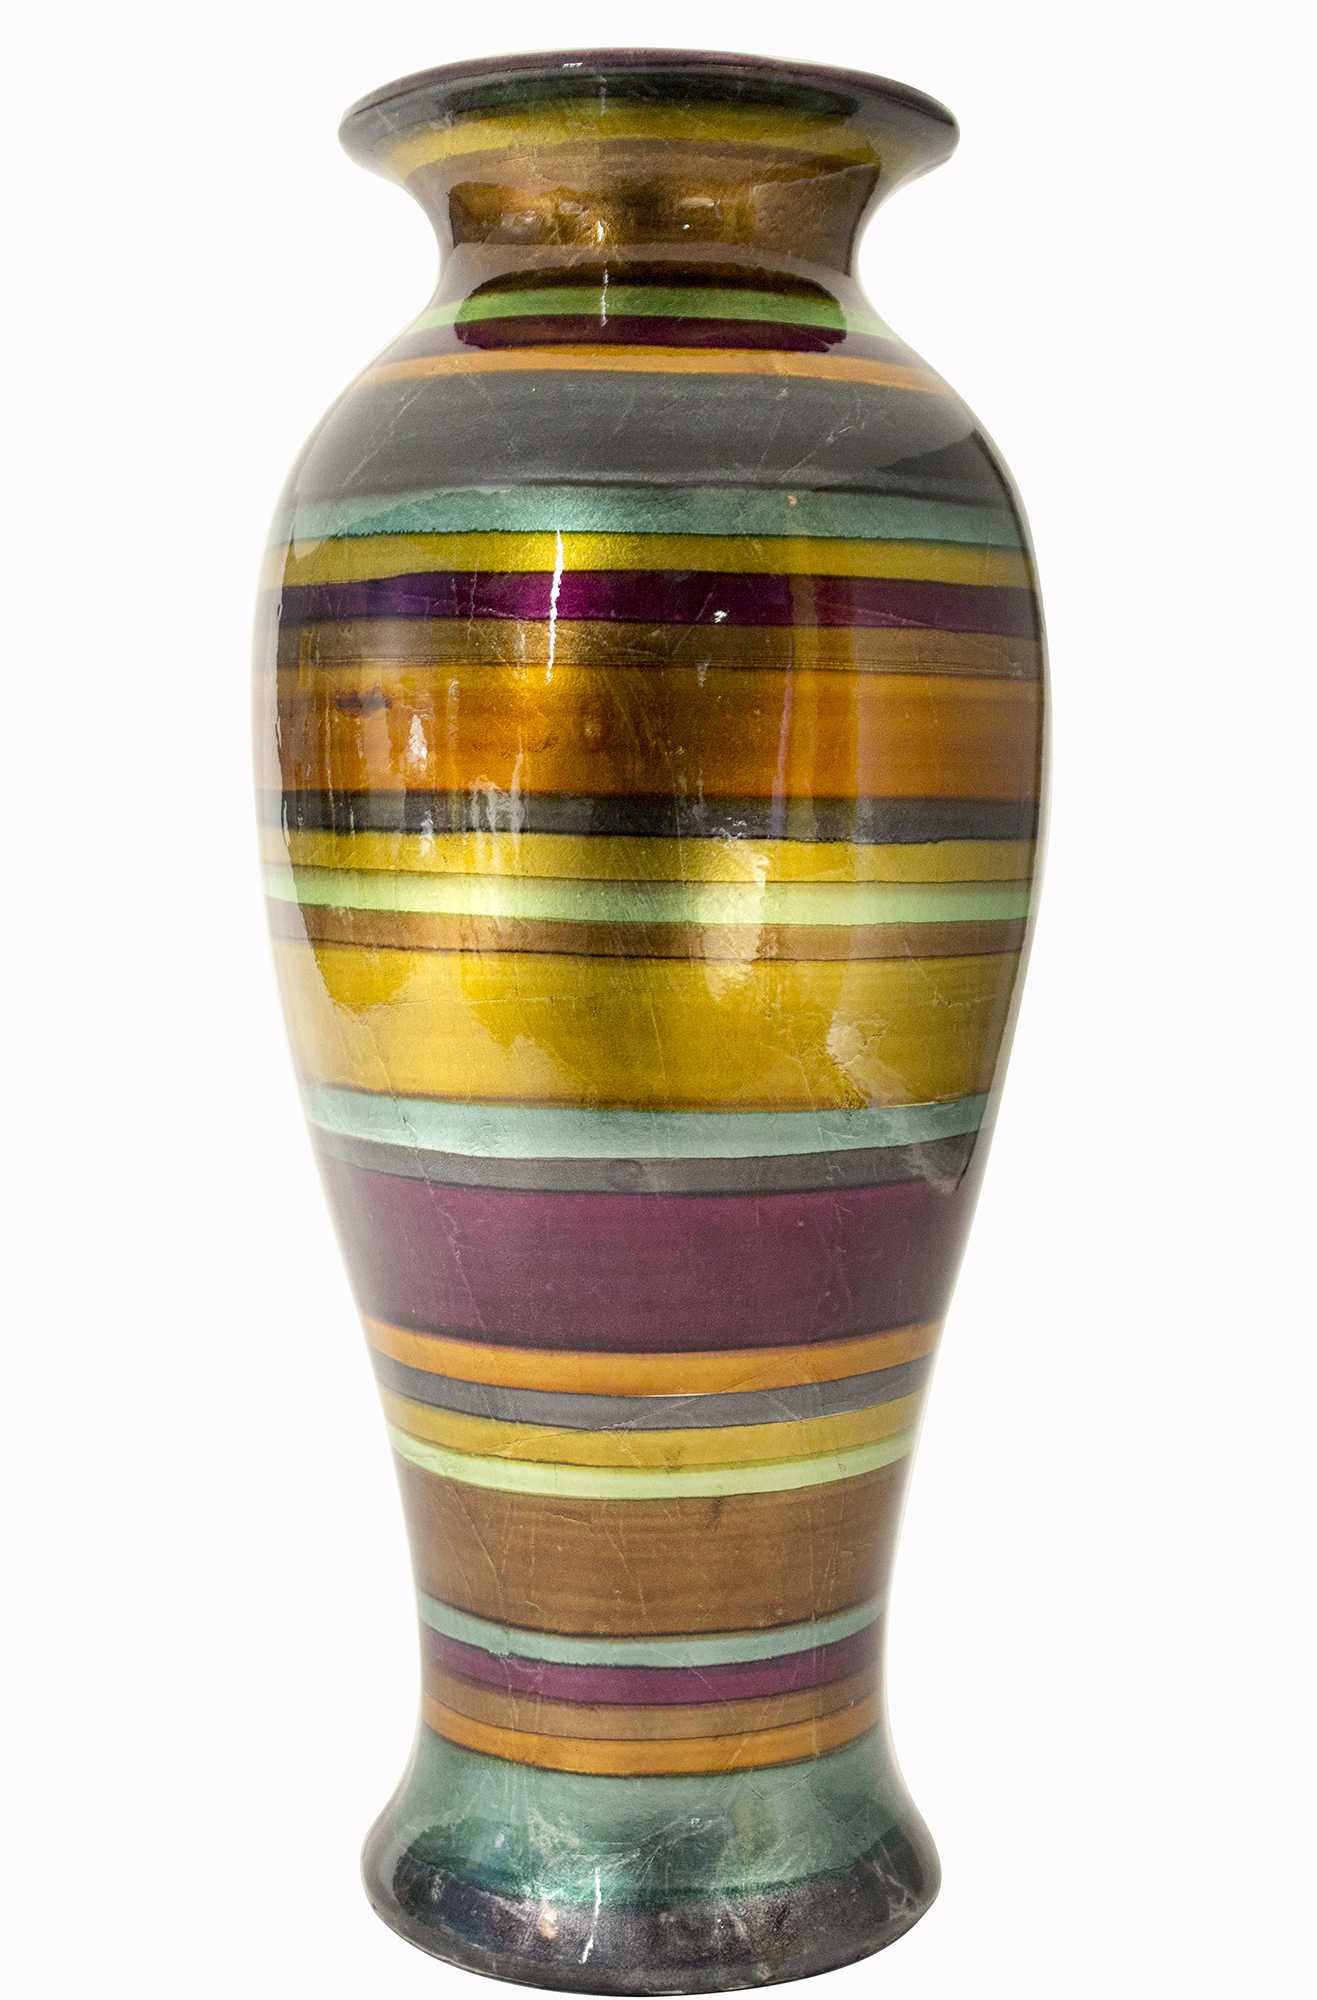 13" X 13" X 26" Eggplant, Bronze, Gold, Green, Copper And Pewter Ceramic Ceramic Vase